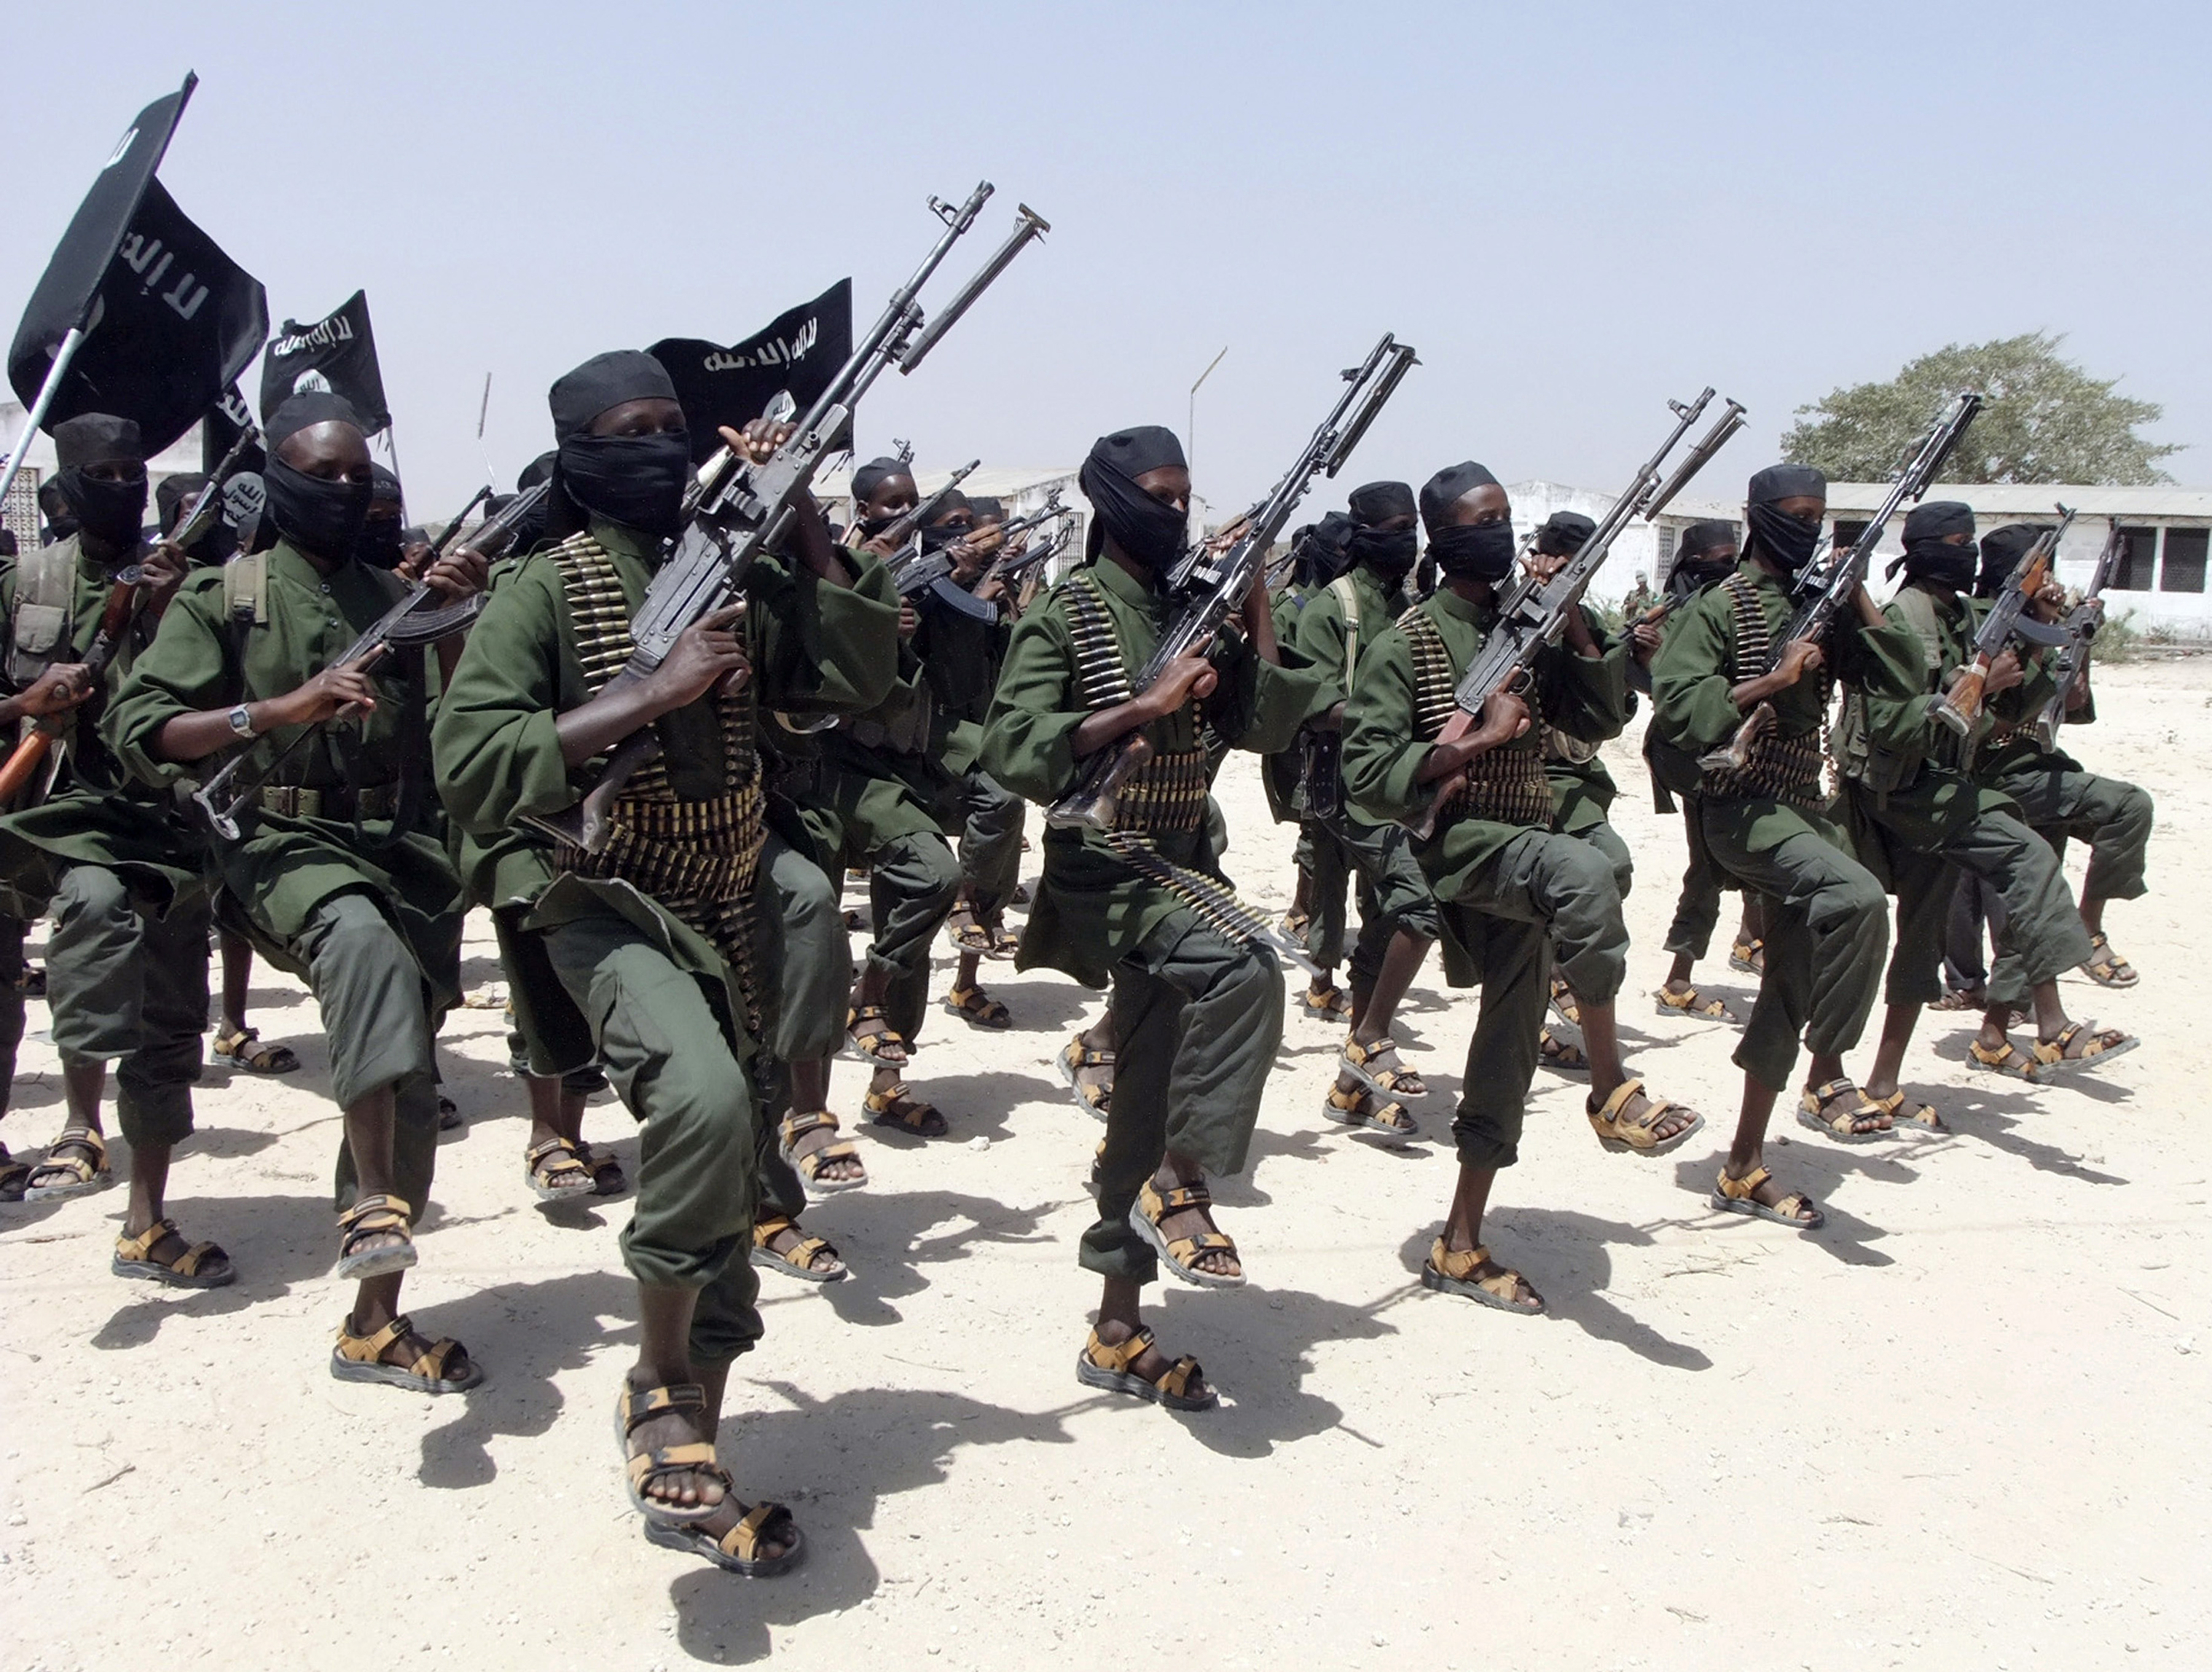 Νέες επιθέσεις ενόπλων με 13 νεκρούς σε παράκτιες περιοχές της Κένυας